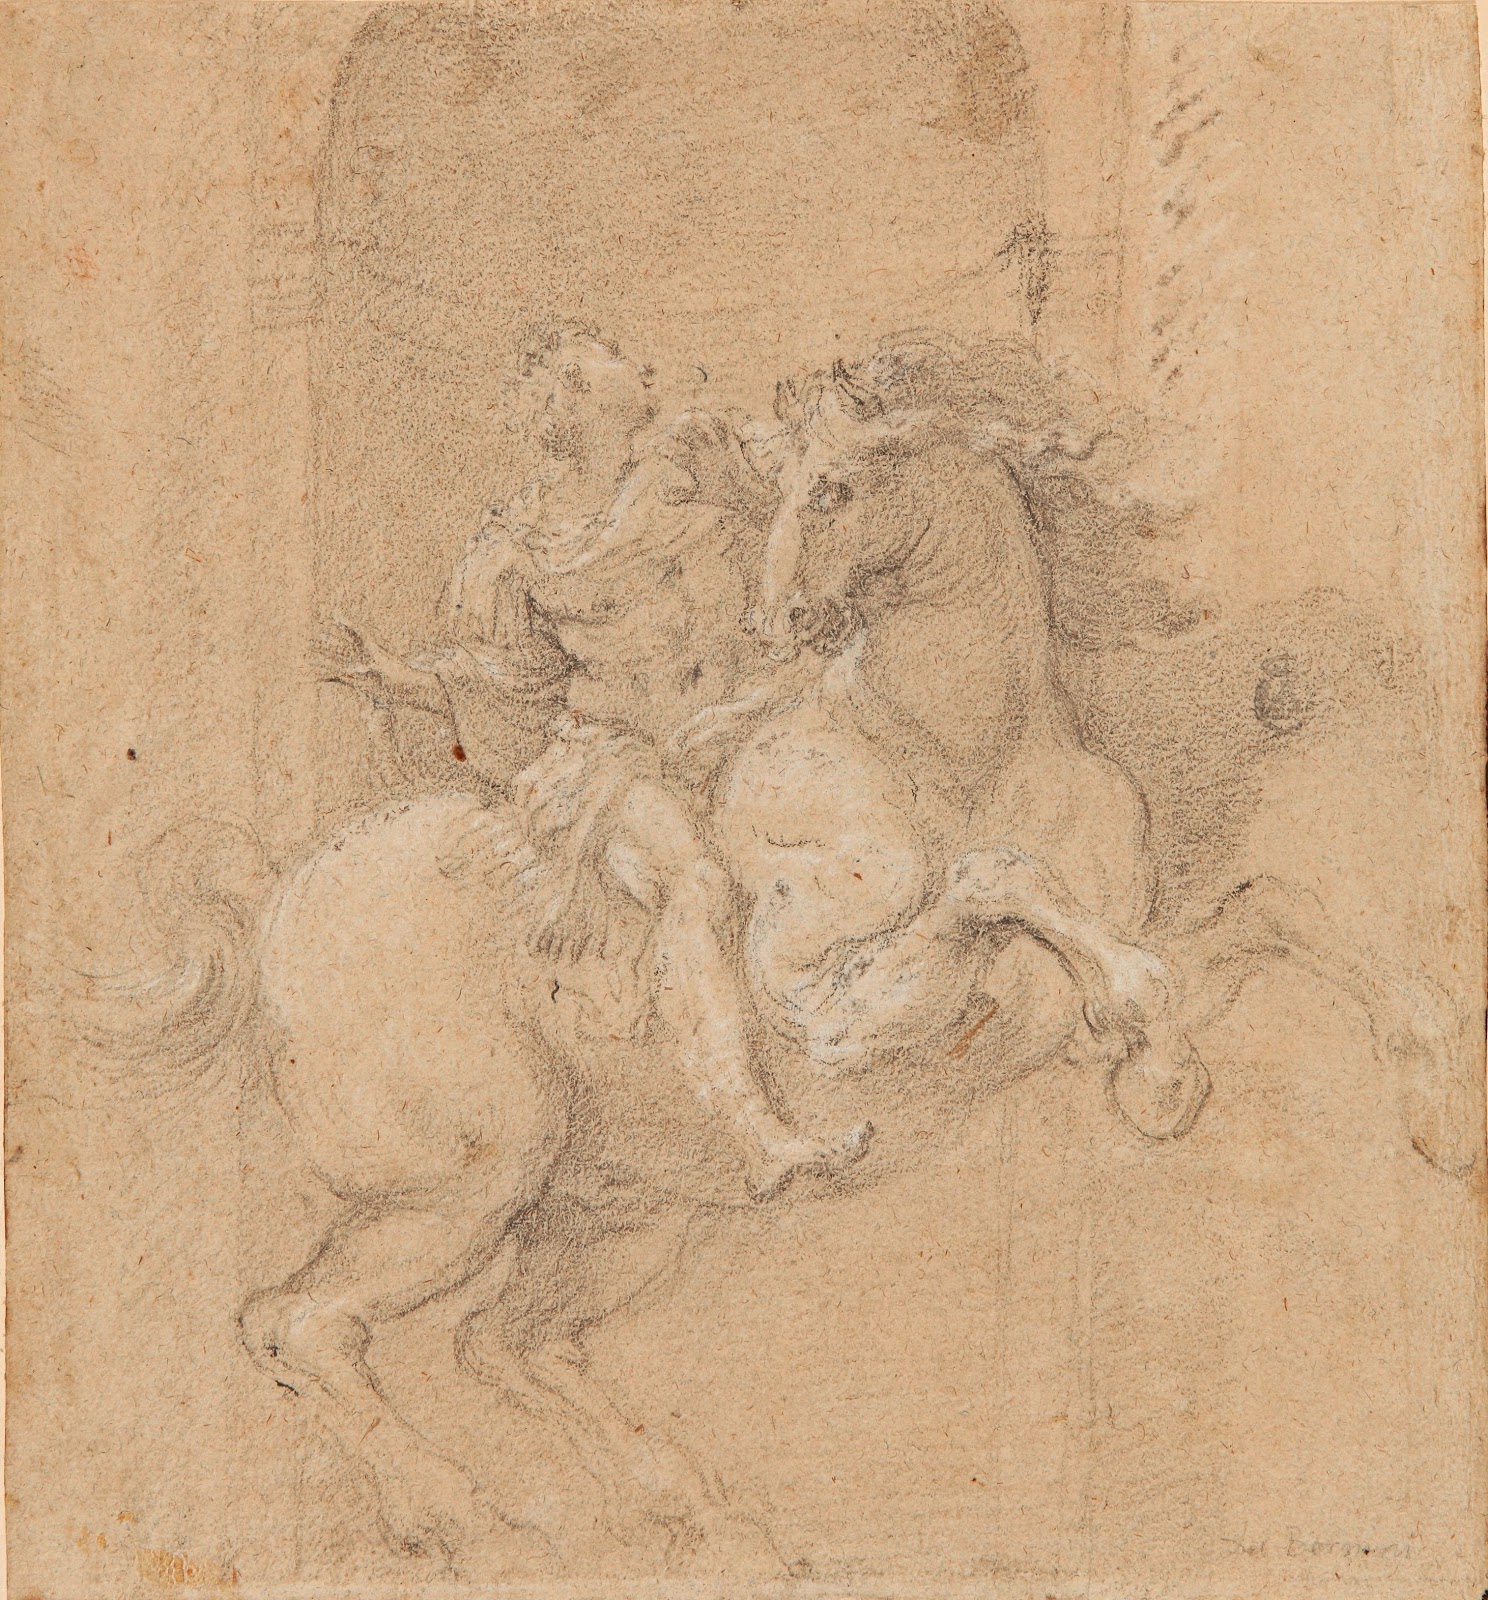 Gian+Lorenzo+Bernini-1598-1680 (106).jpg